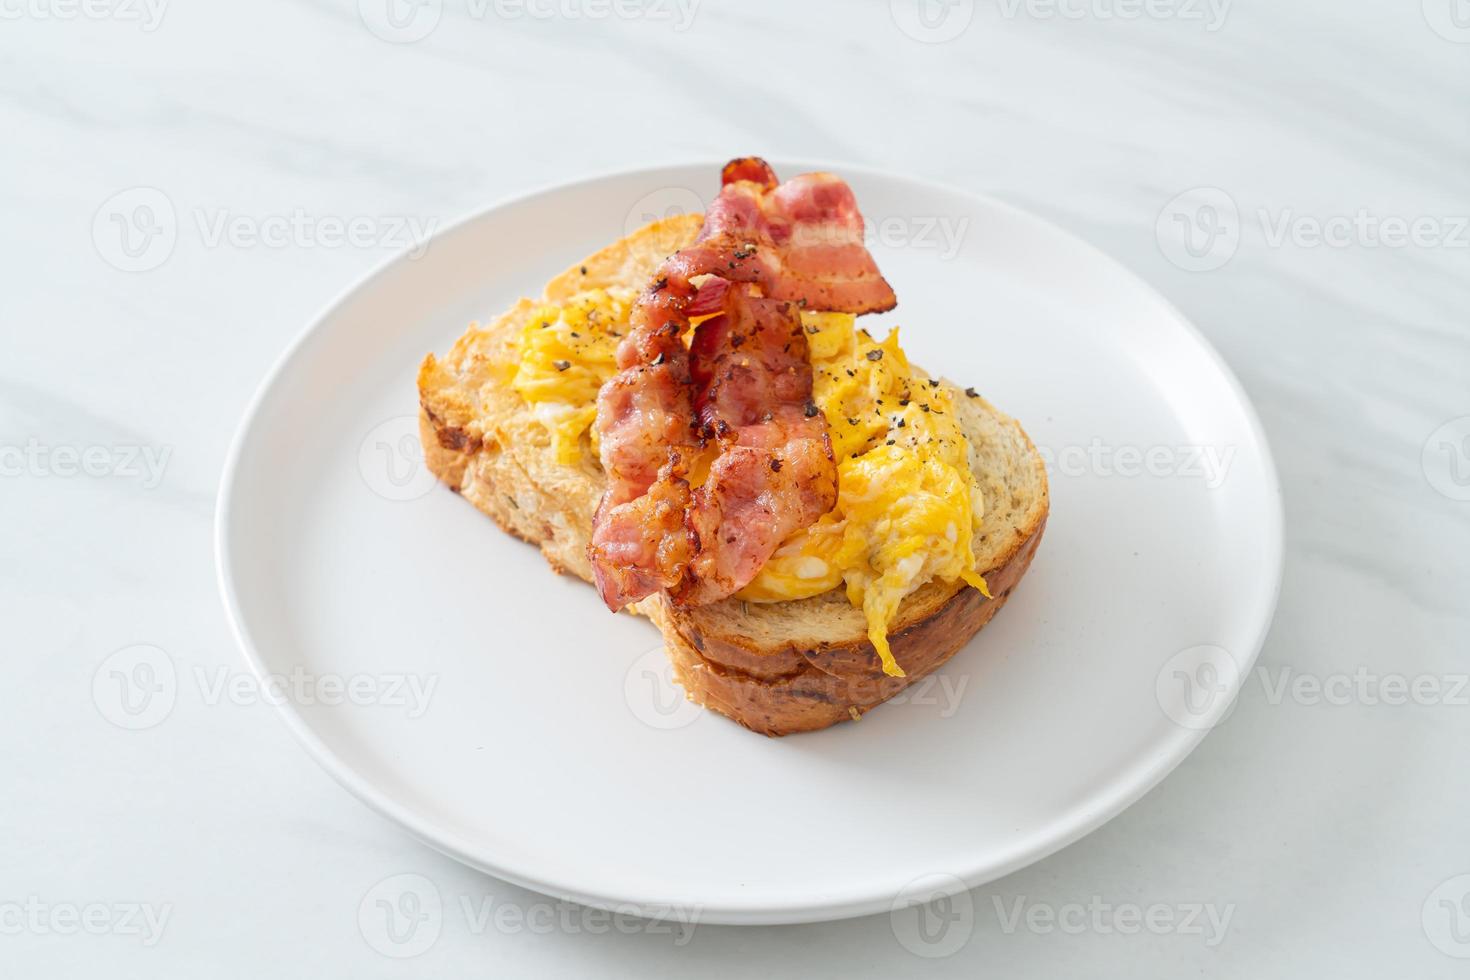 pane tostato con uova strapazzate e bacon foto